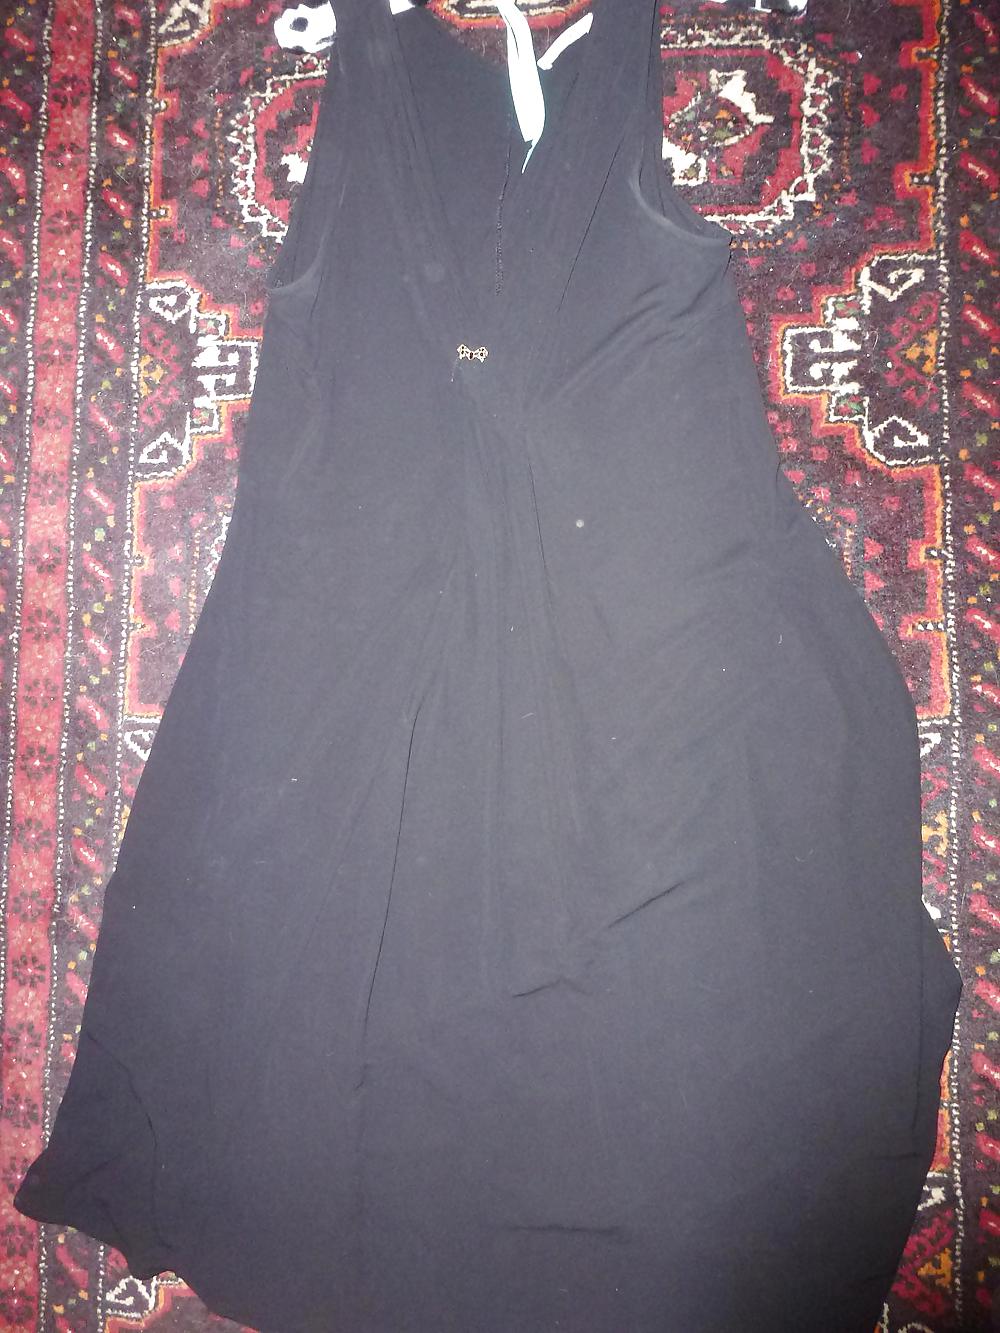 Sborrare su mia suocera vestito nero e mutandine
 #37144529